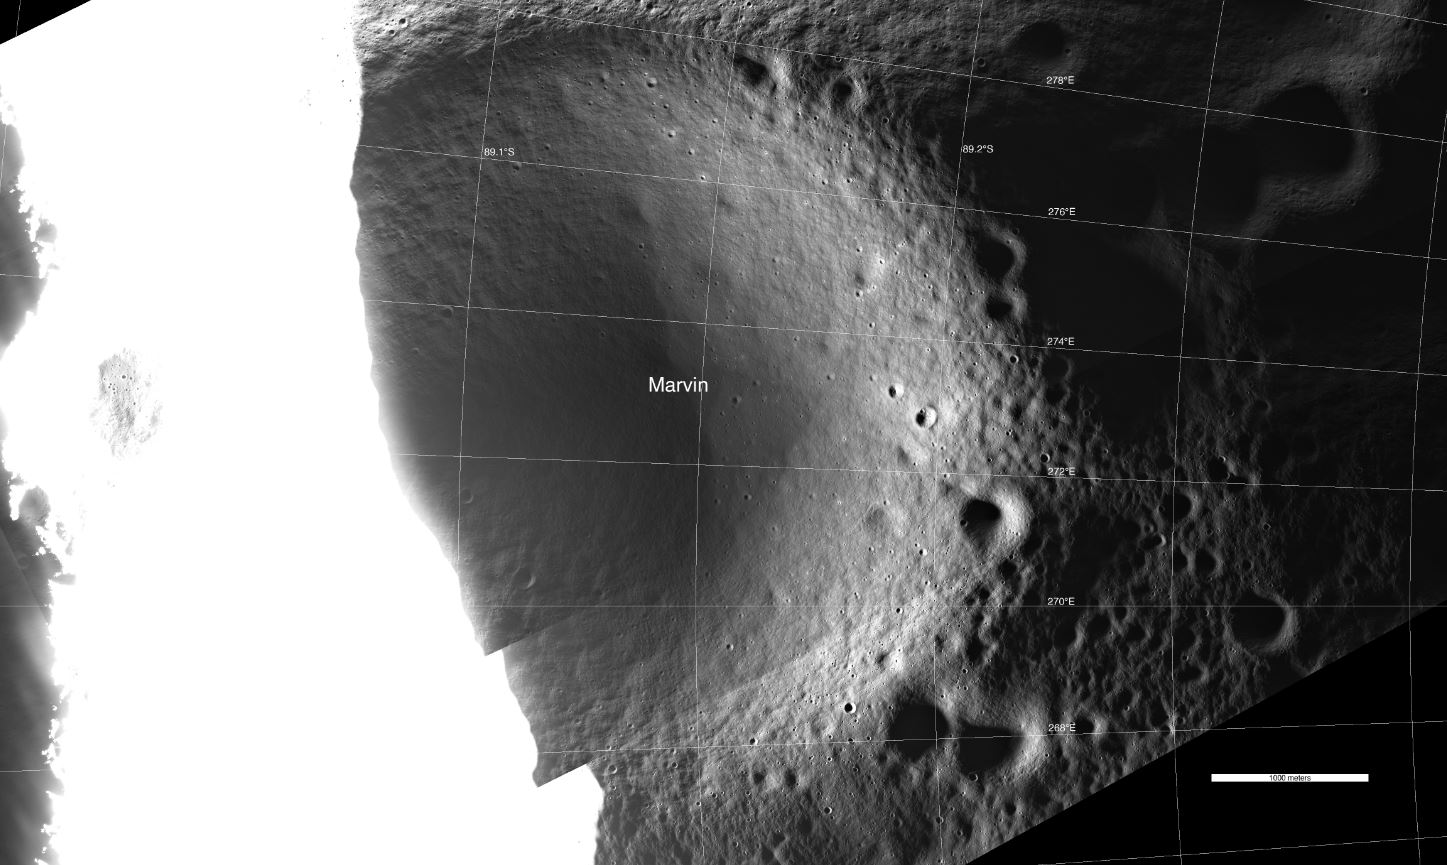 La imagen del cráter Marvin usó luz reflejada en lugar de las áreas circundantes inundadas con luz solar directa.